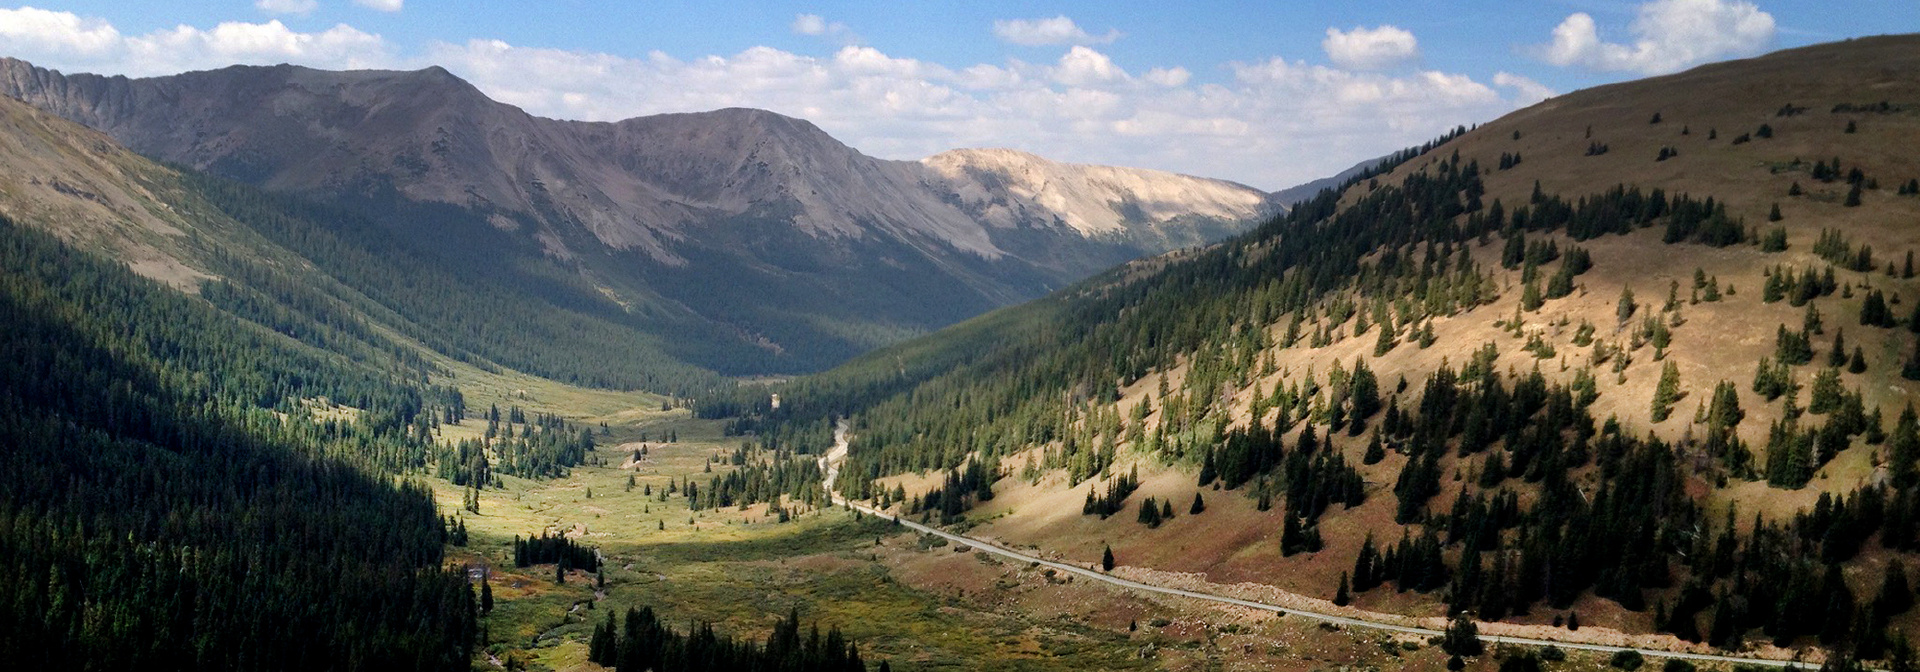 Colorado: Our Ride the Rockies